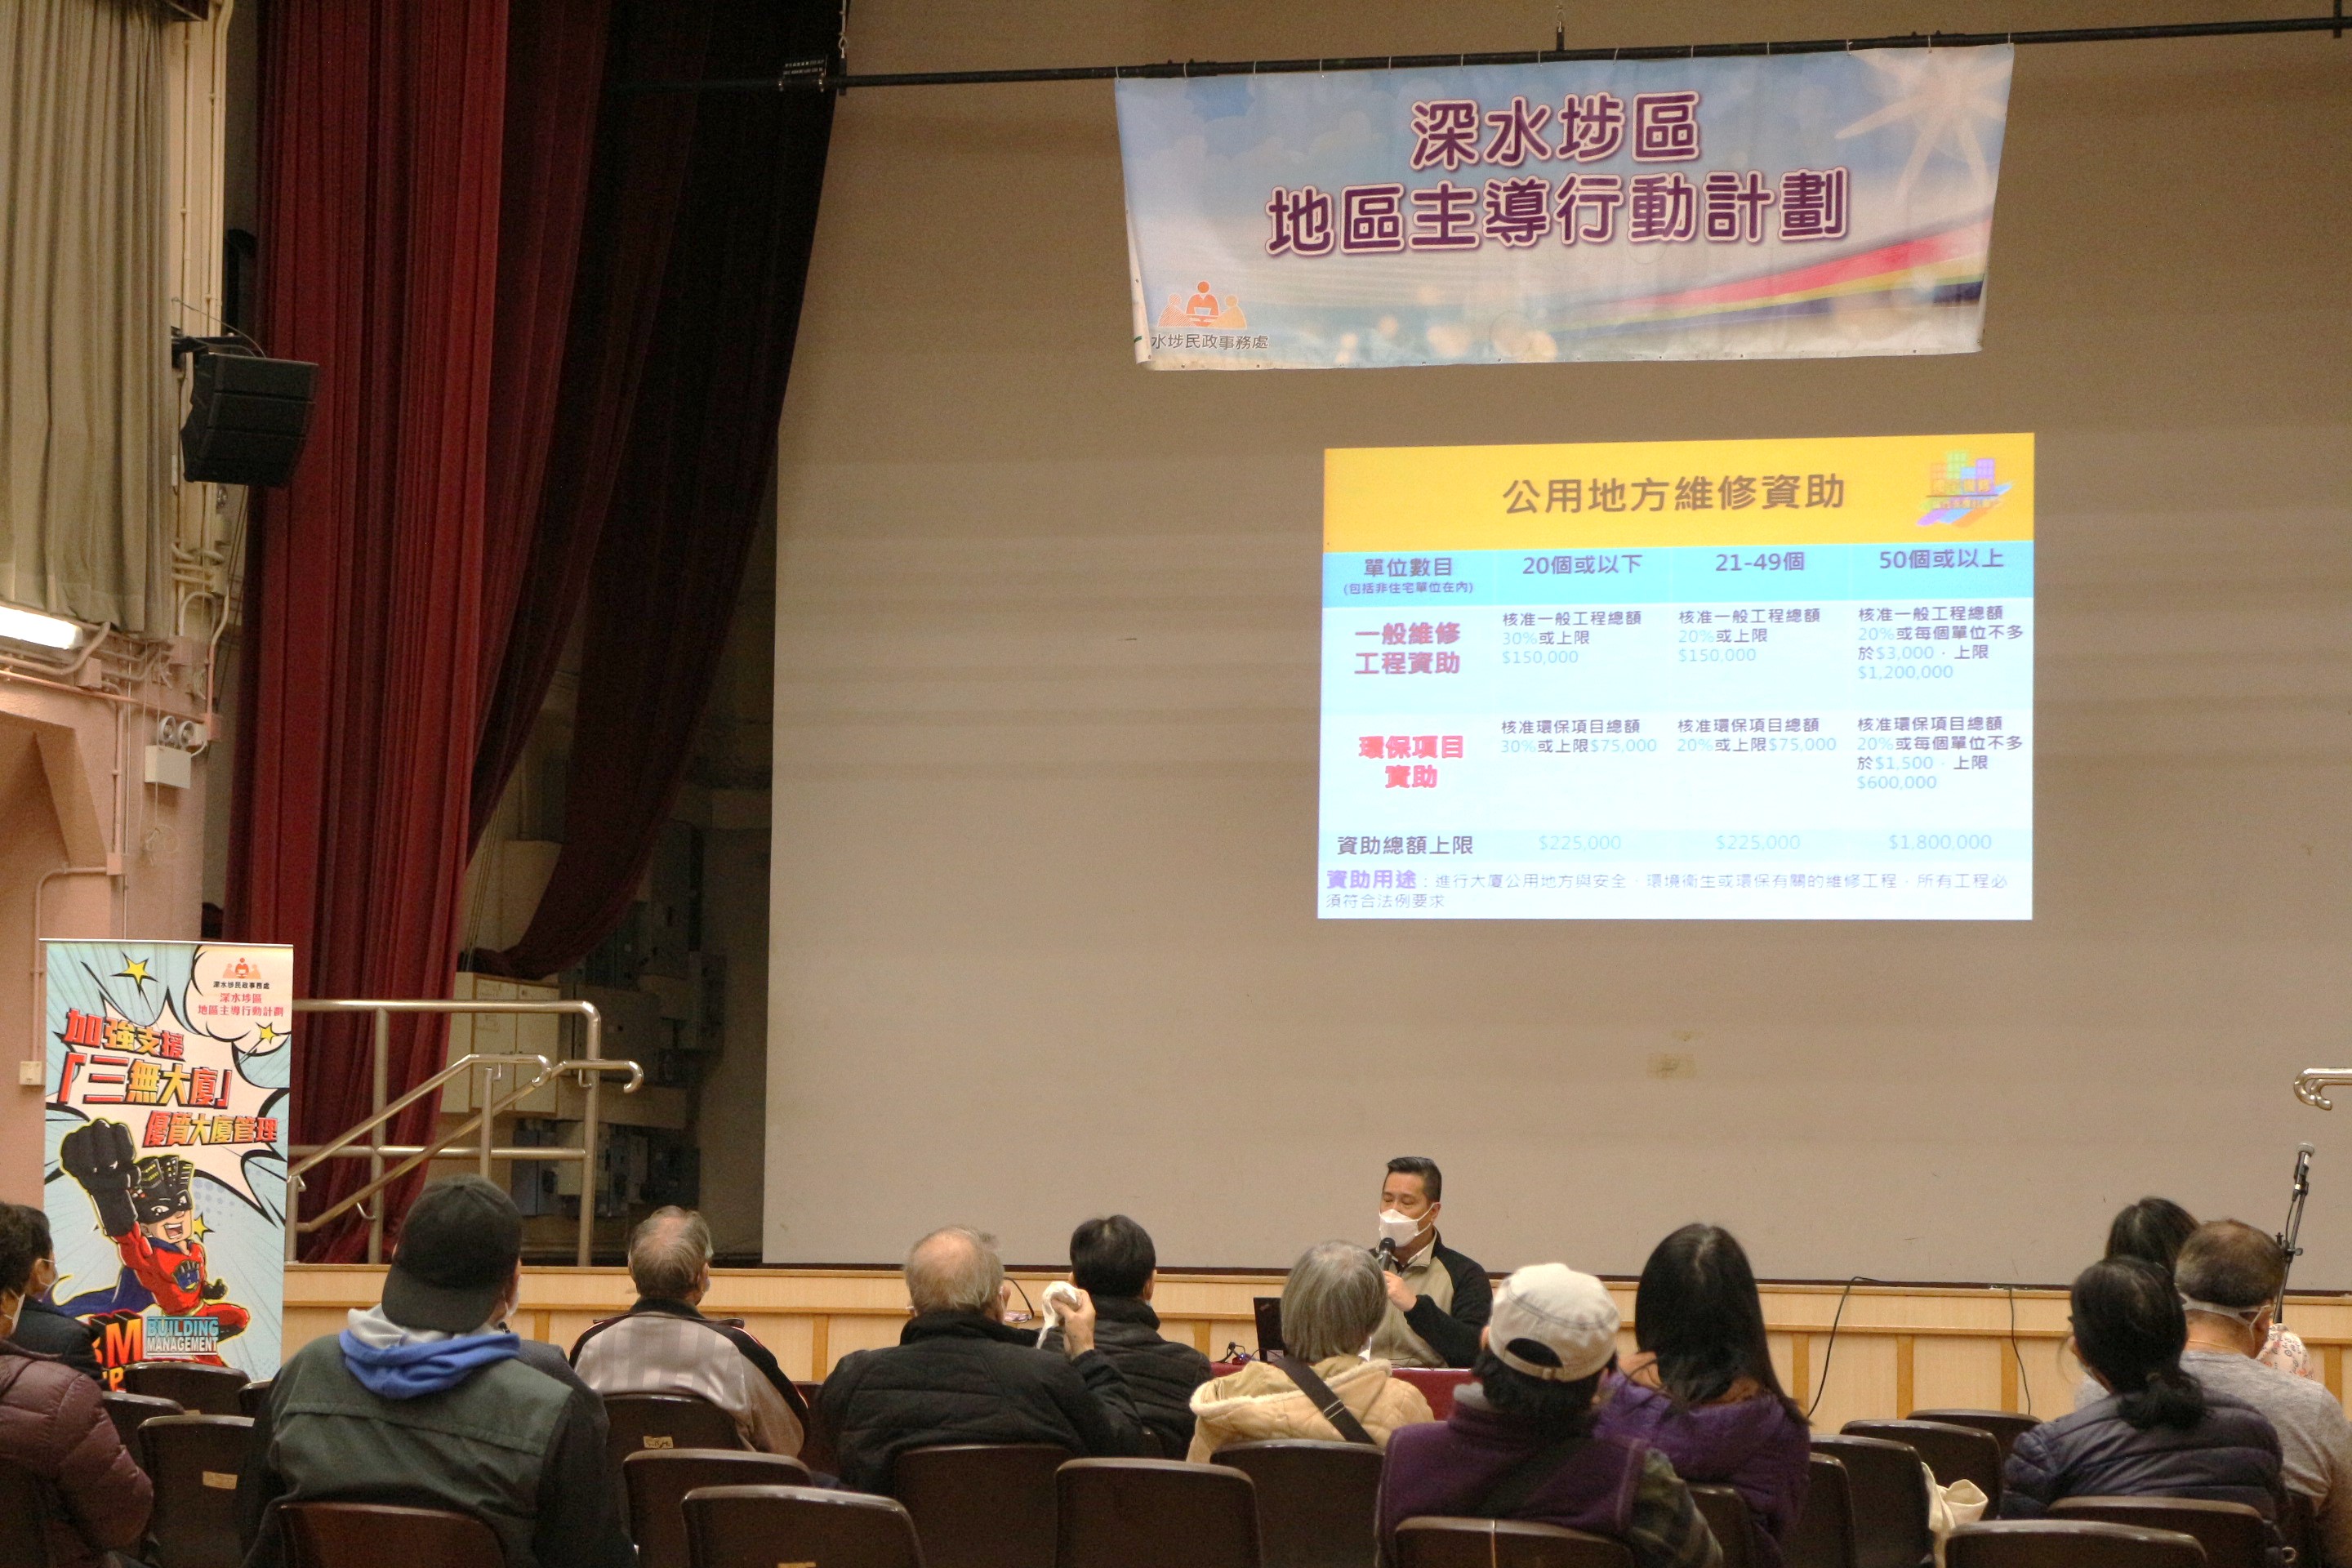 Sham Shui Po District-led Actions Scheme – Building Management Talk (Presentation on “Integrated Building Rehabilitation Assistance Scheme”)